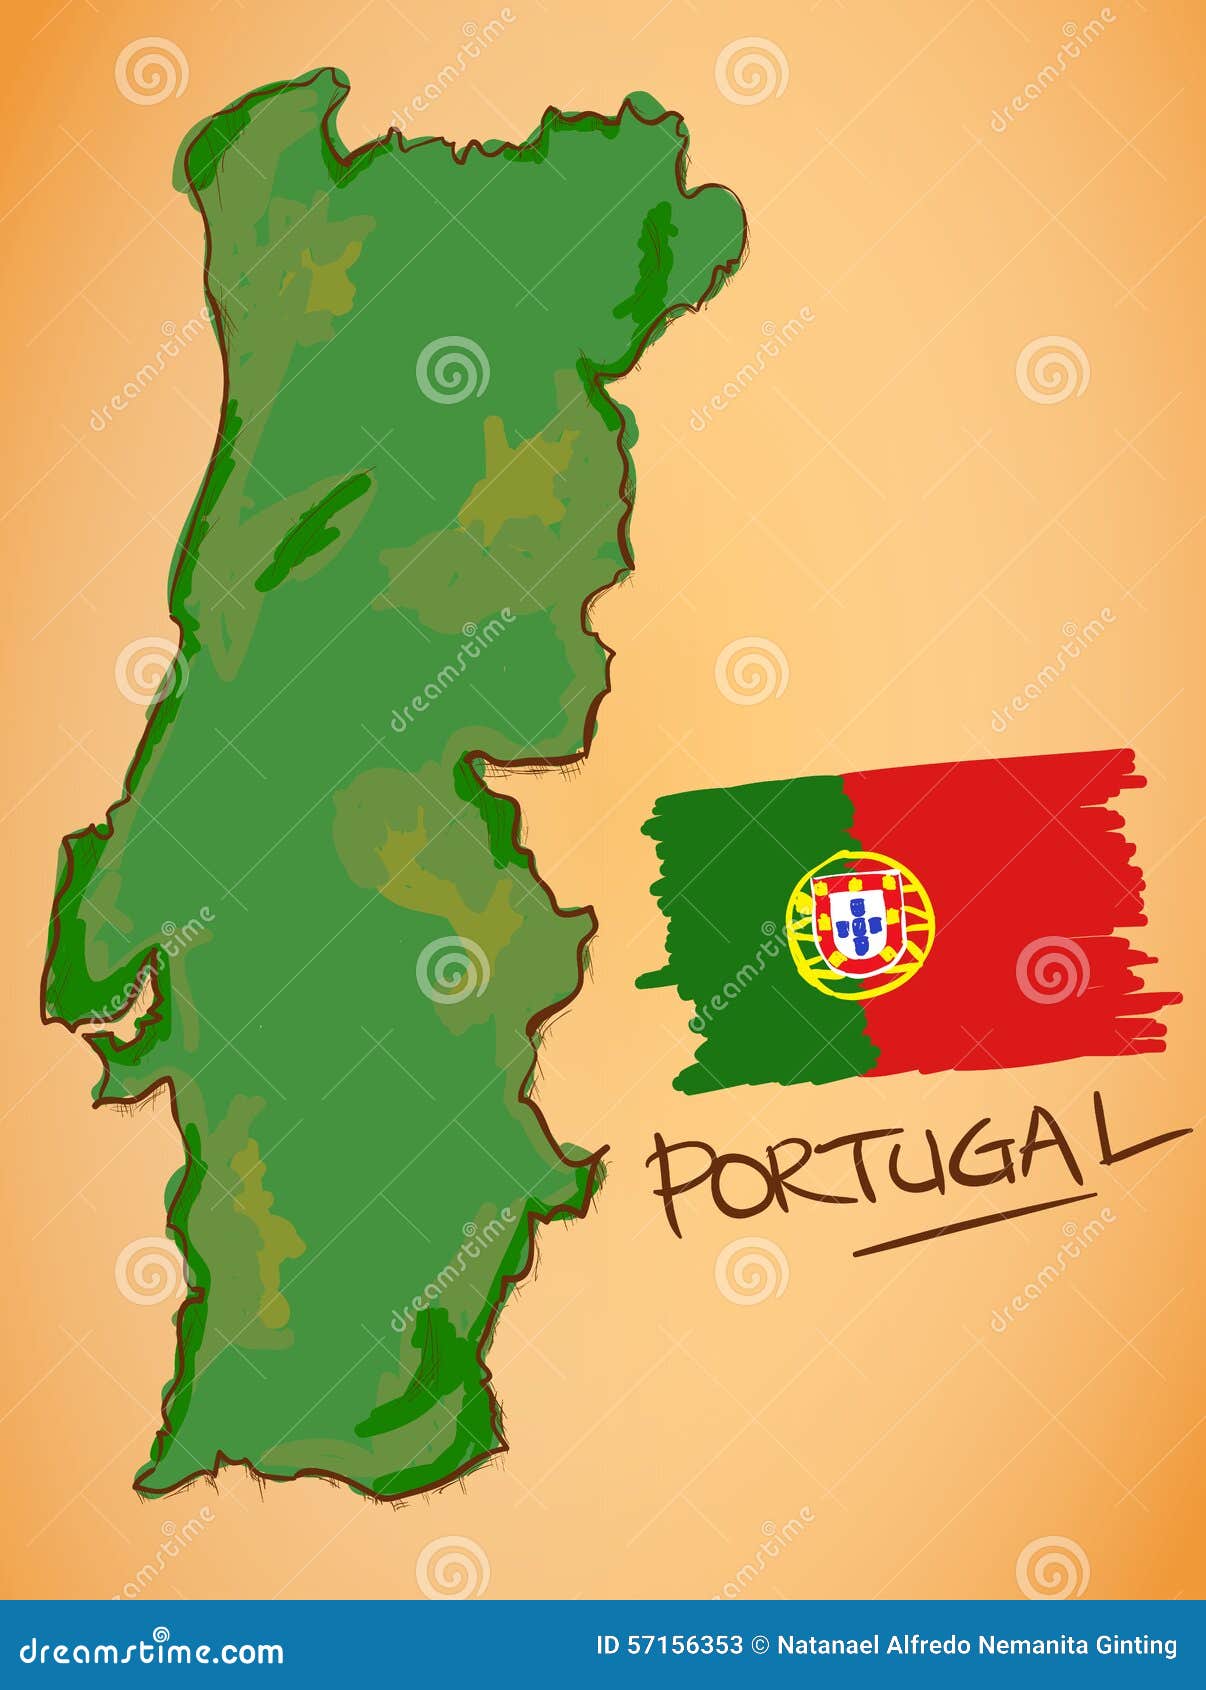 bandeira do mapa de portugal. ilustração vetorial com um mapa da europa e  país destacado com bandeira nacional 5175932 Vetor no Vecteezy